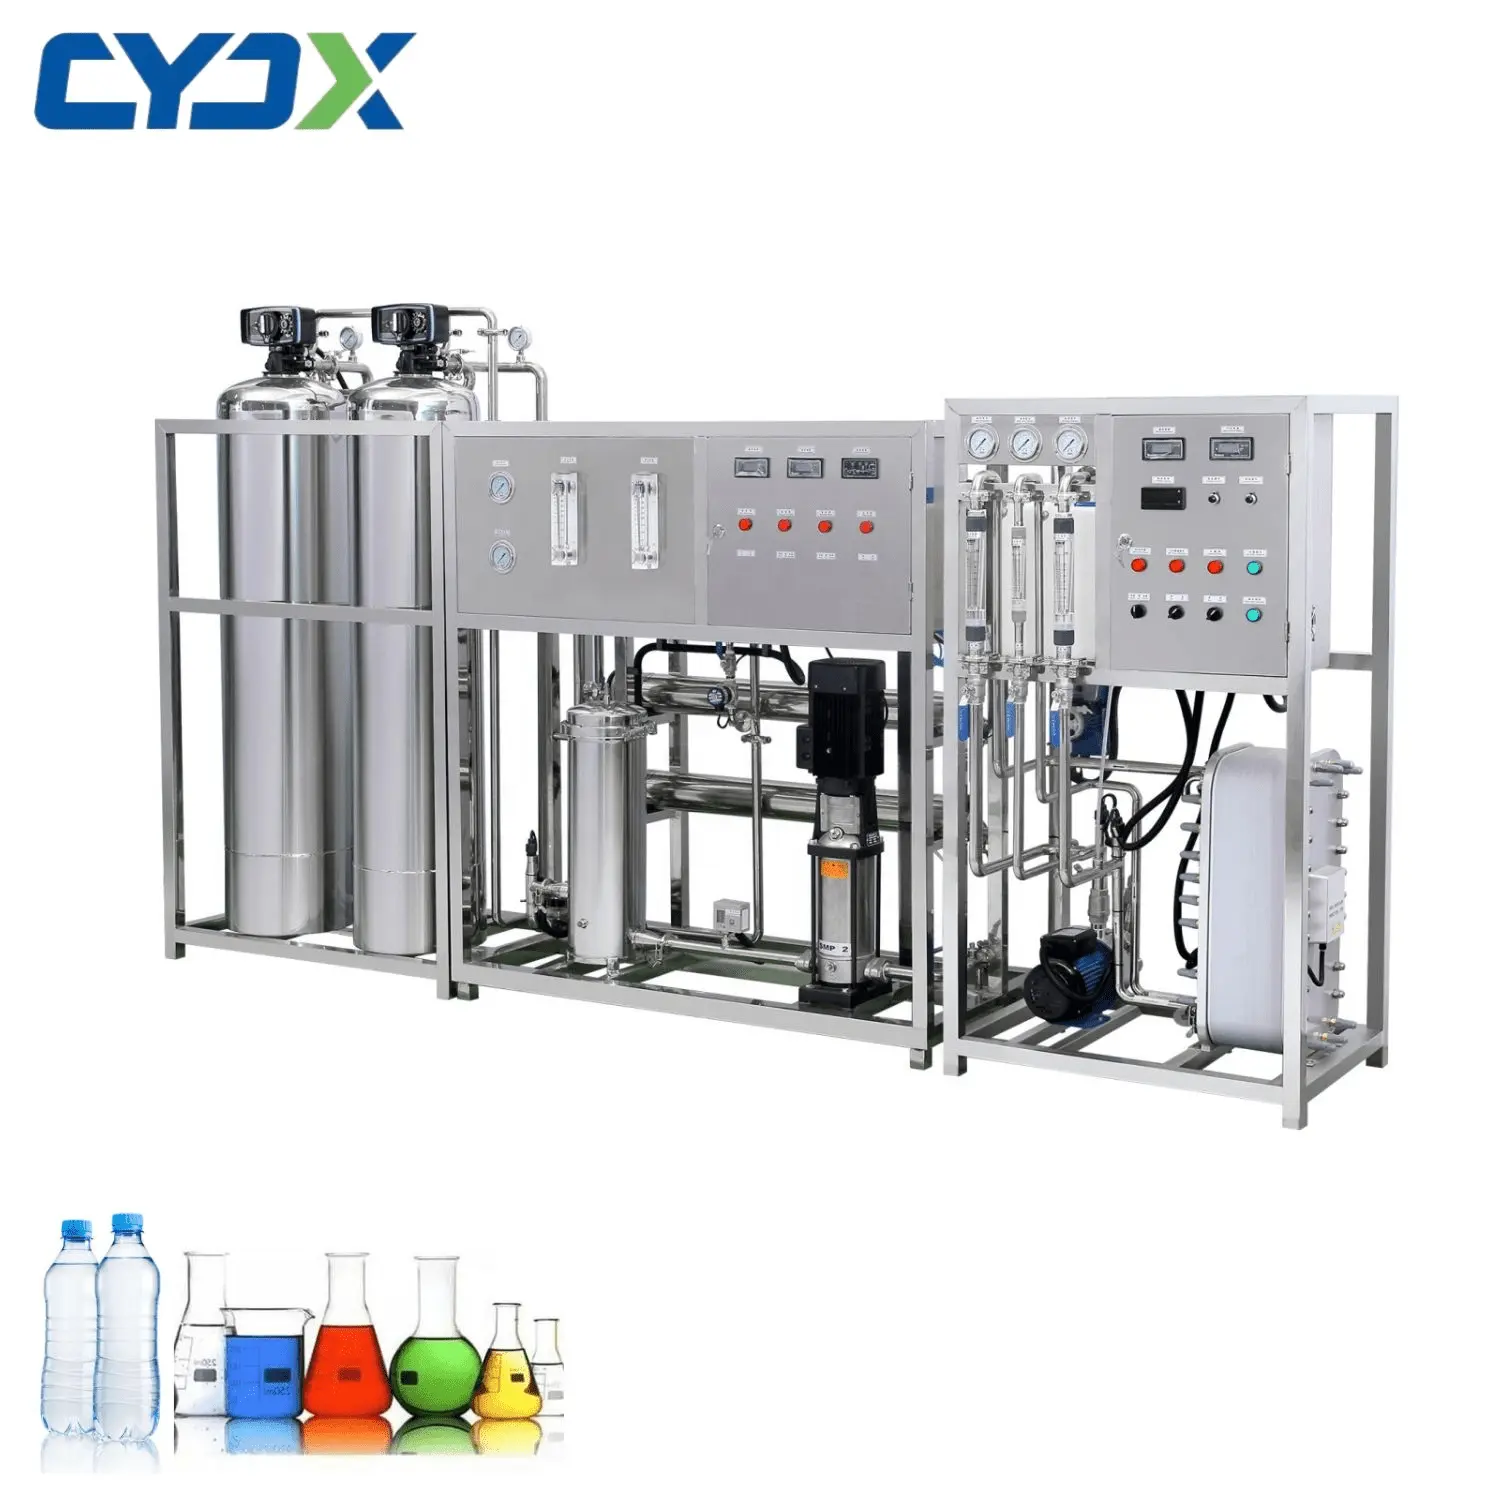 Cyjx deionized máy nước EDI electrodeionization Máy lọc nước chi phí y tế làm sạch hệ thống lọc nước